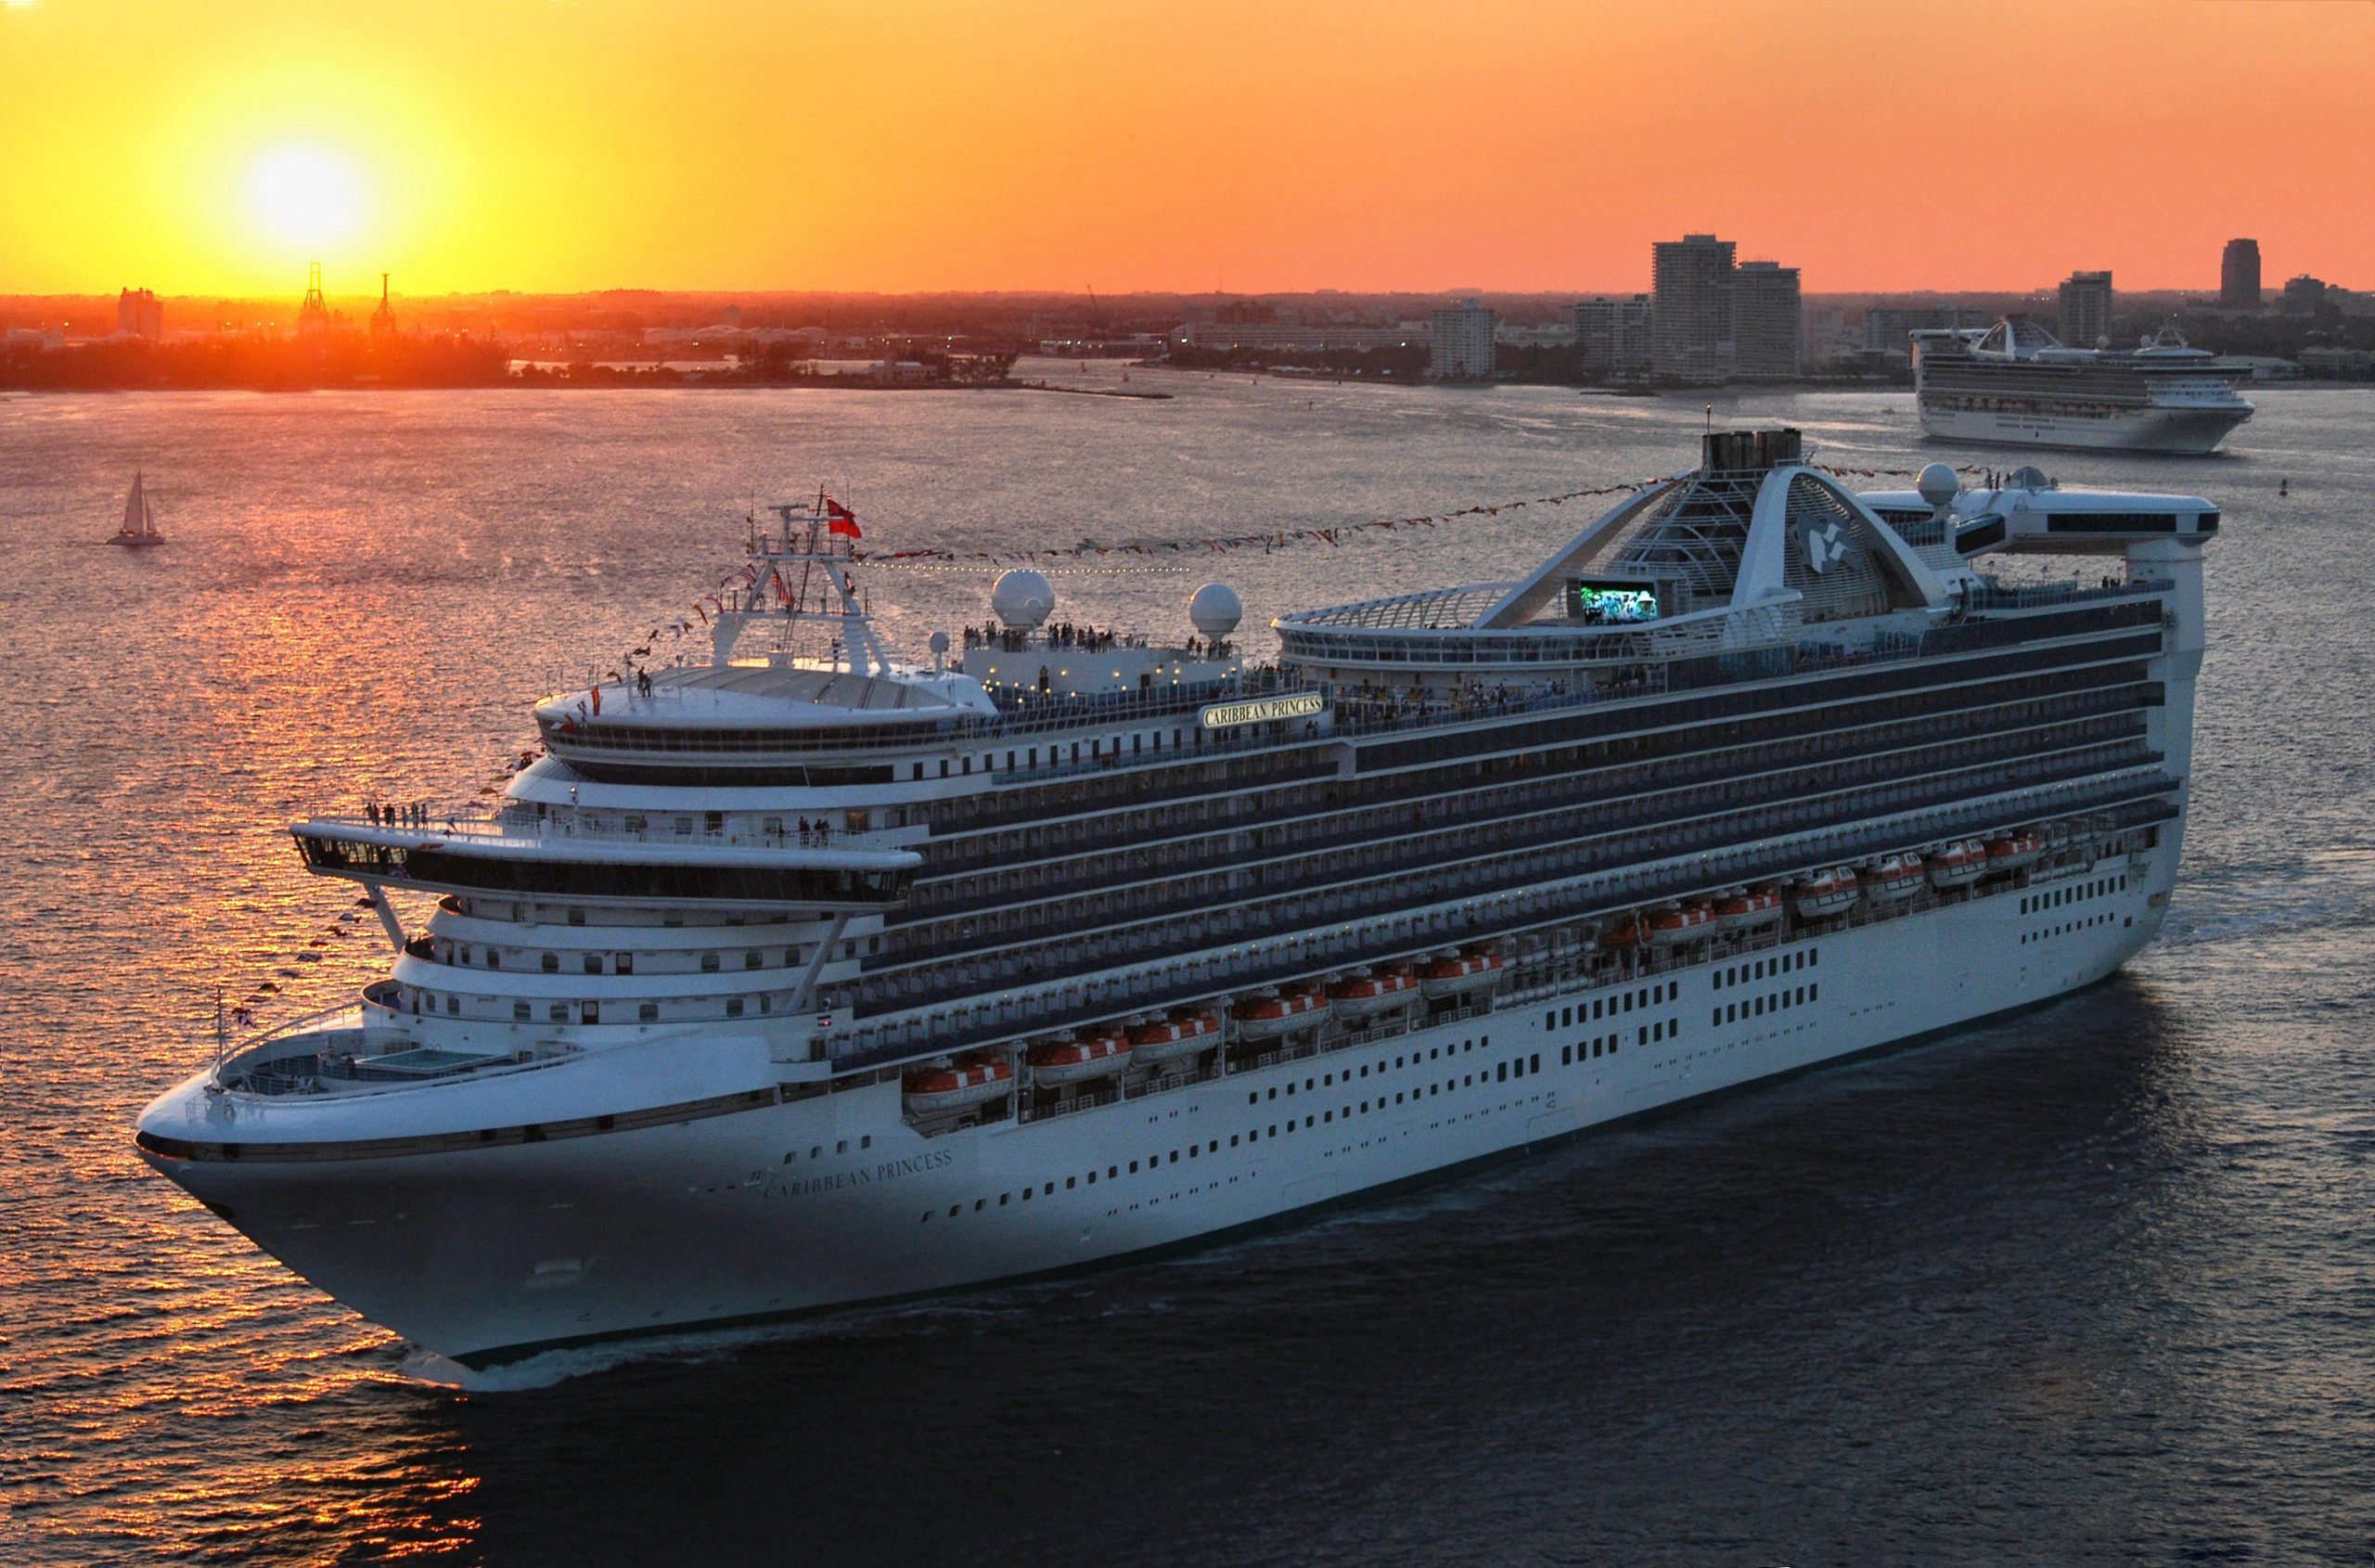 Bis Ende August 2020 wird es keine Kreuzfahrten mit Princess-Schiffen geben, Japan, hawaii und Polynesien haben bei Princess Cruises bis Herbst Pause